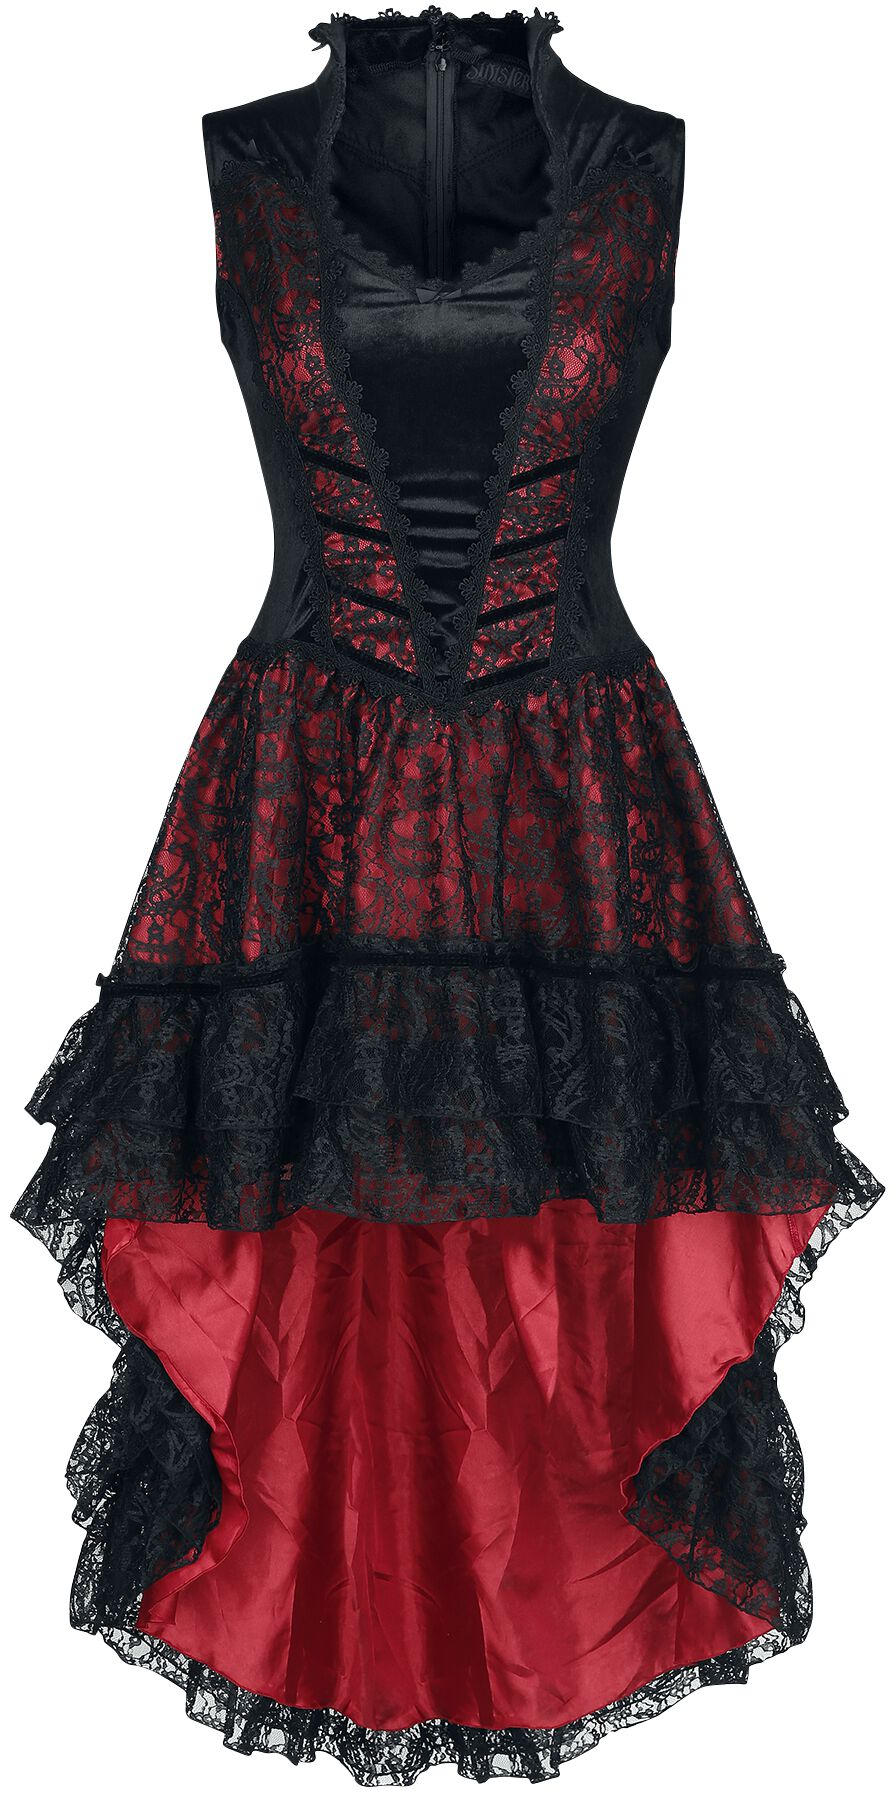 Sinister Gothic Gothic Dress Mittellanges Kleid schwarz rot in M